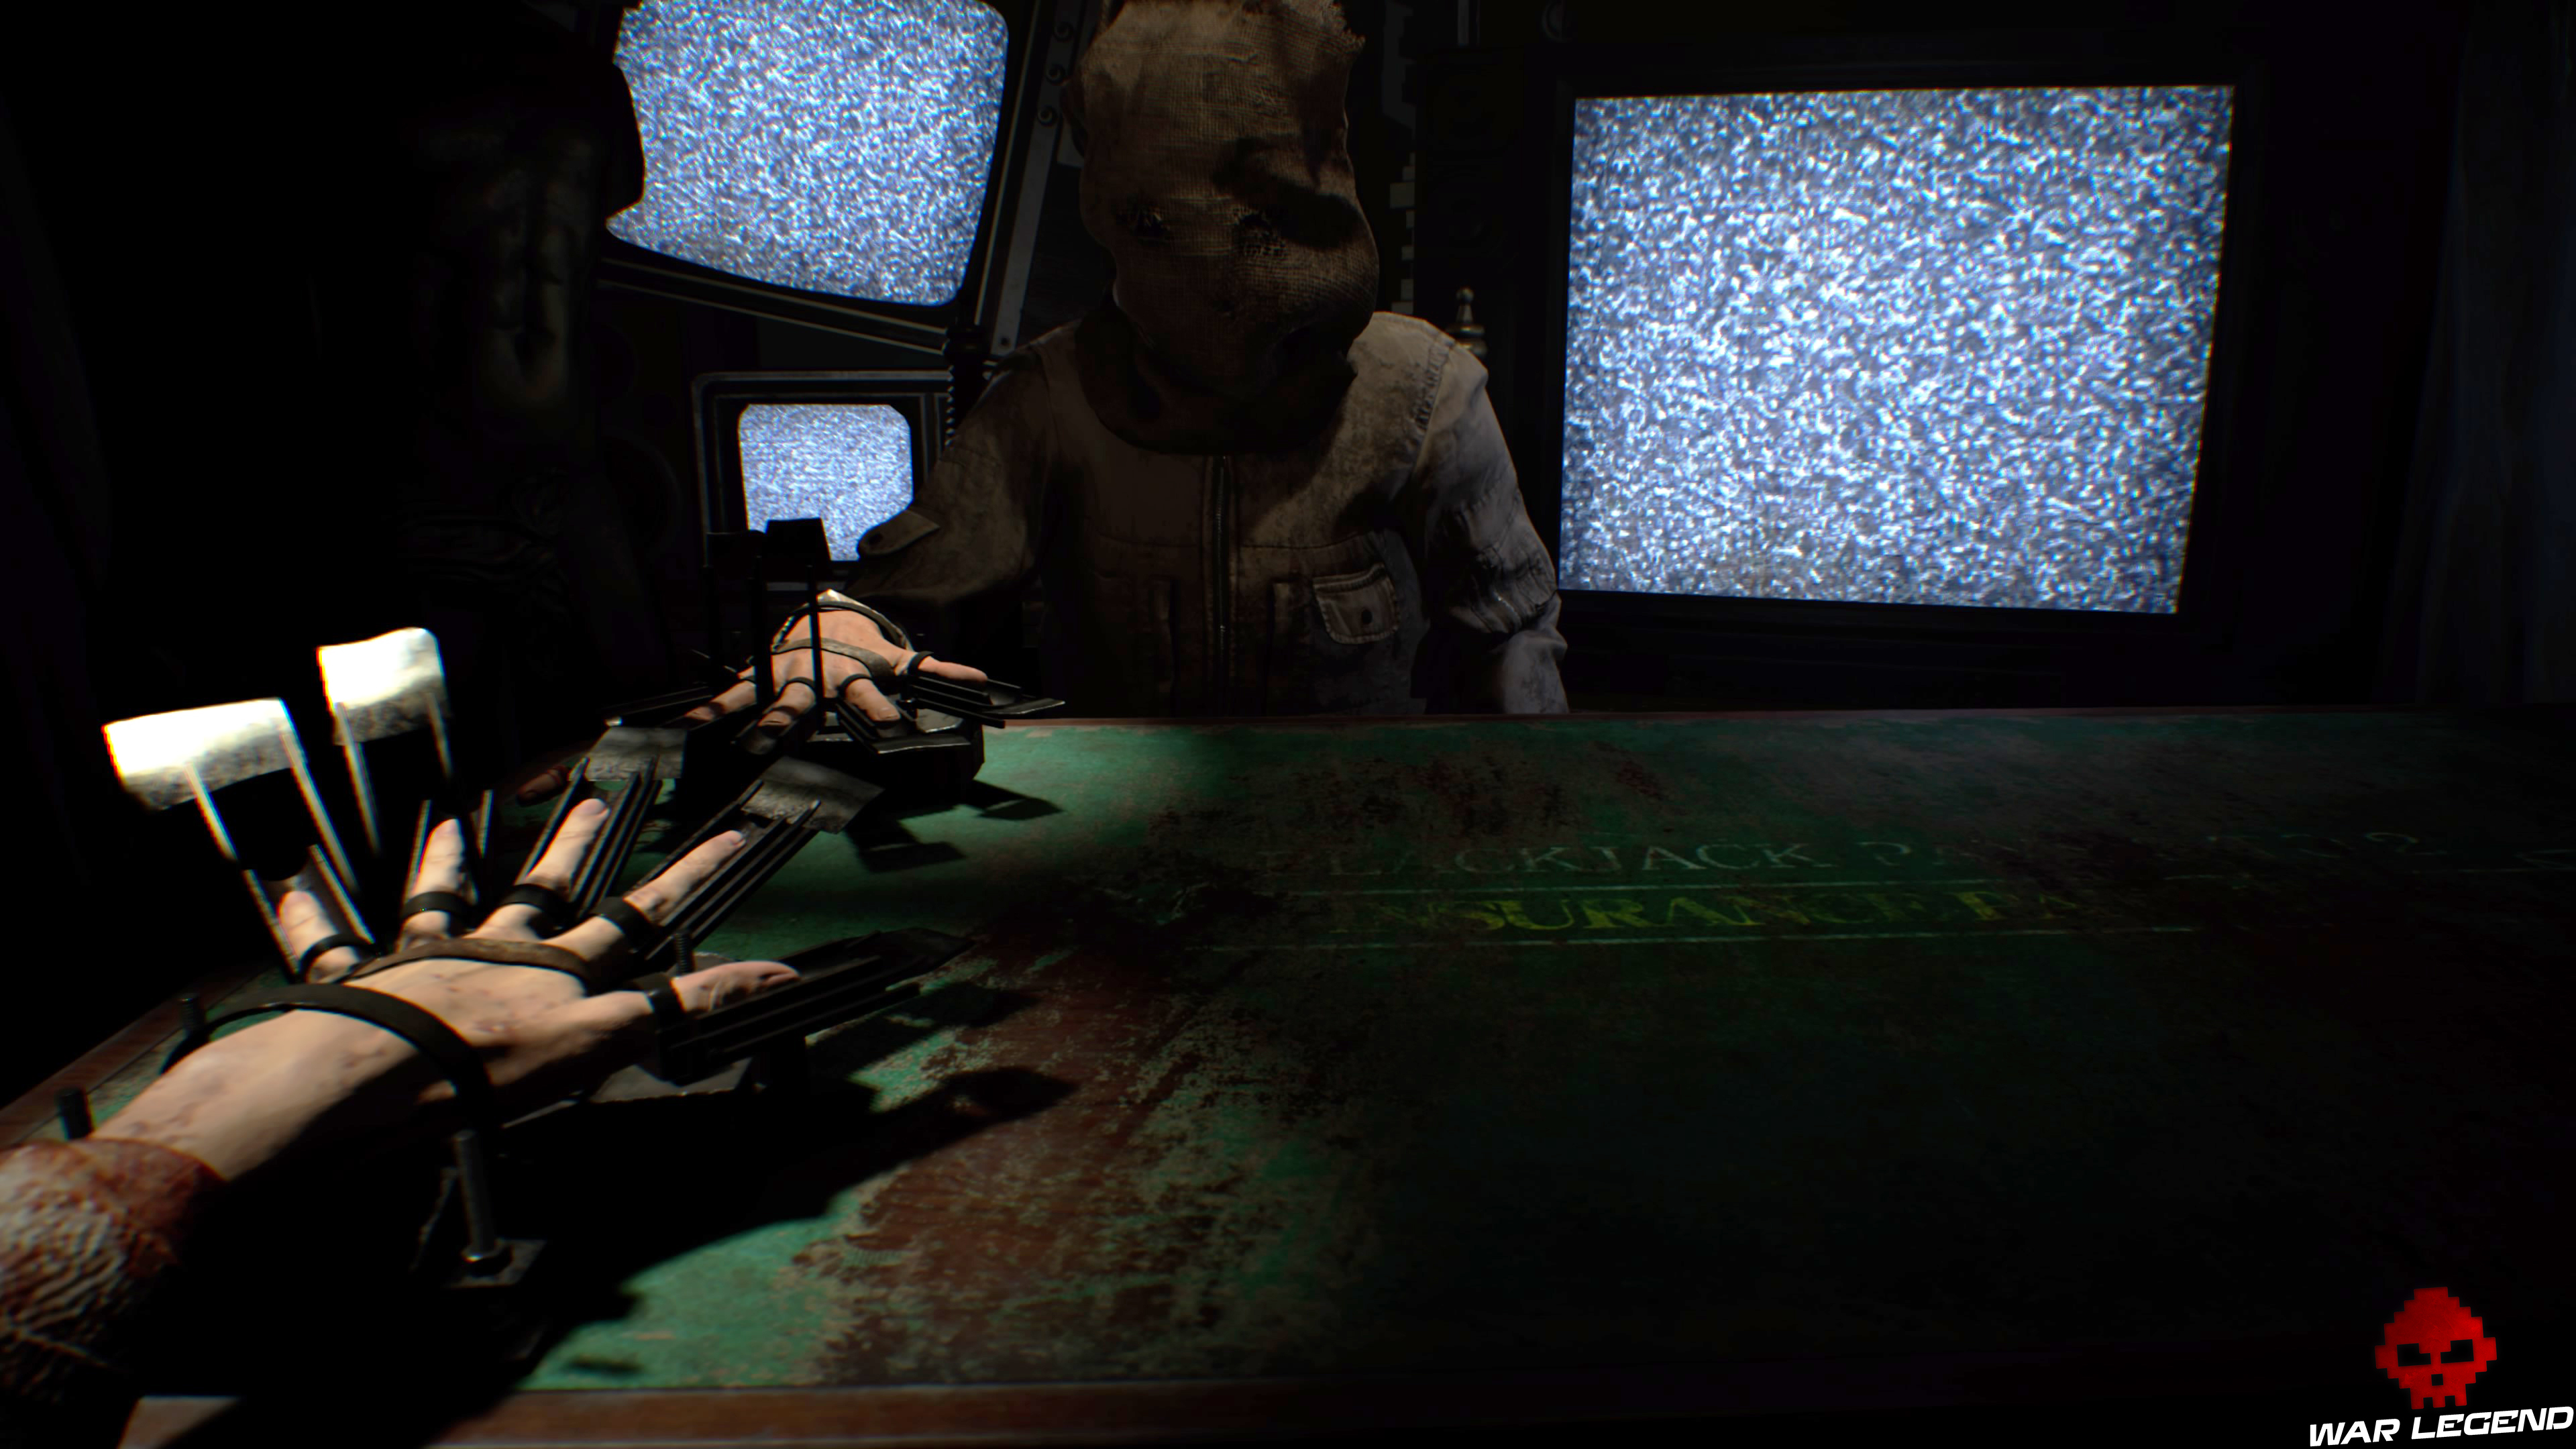 Solution Resident Evil 7 Biohazard - Vingt-et-un main deux doigts menacés